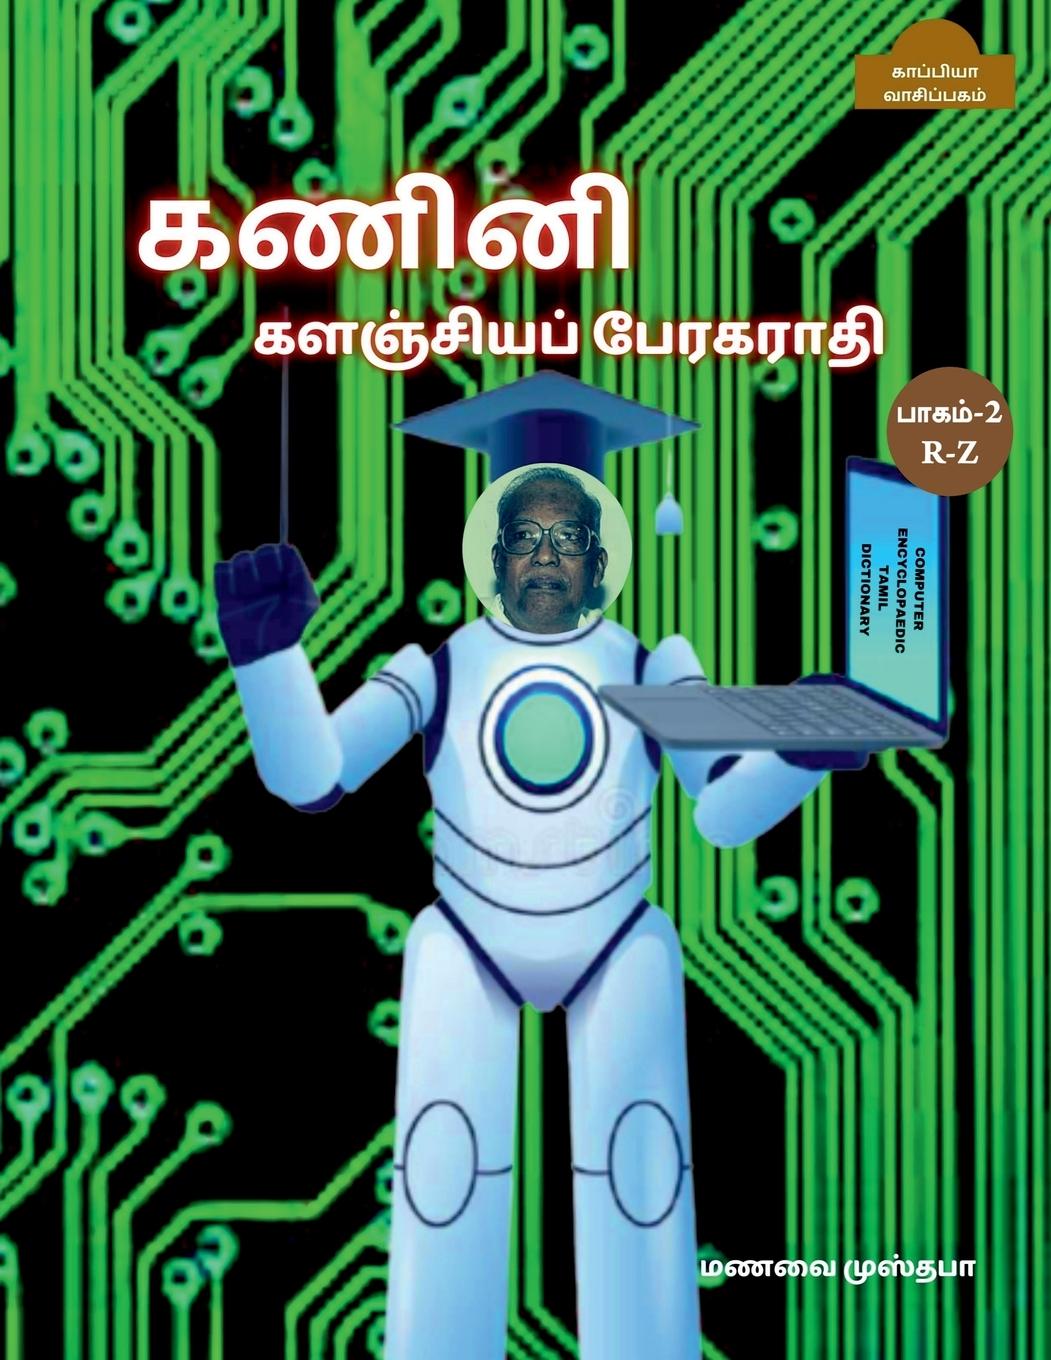 Kniha Computer Encyclopaedic Tamil Dictionary ( R-Z) / &#2965;&#2979;&#3007;&#2985;&#3007; &#2965;&#2995;&#2974;&#3021;&#2970;&#3007;&#2991;&#2986;&#3021; & 